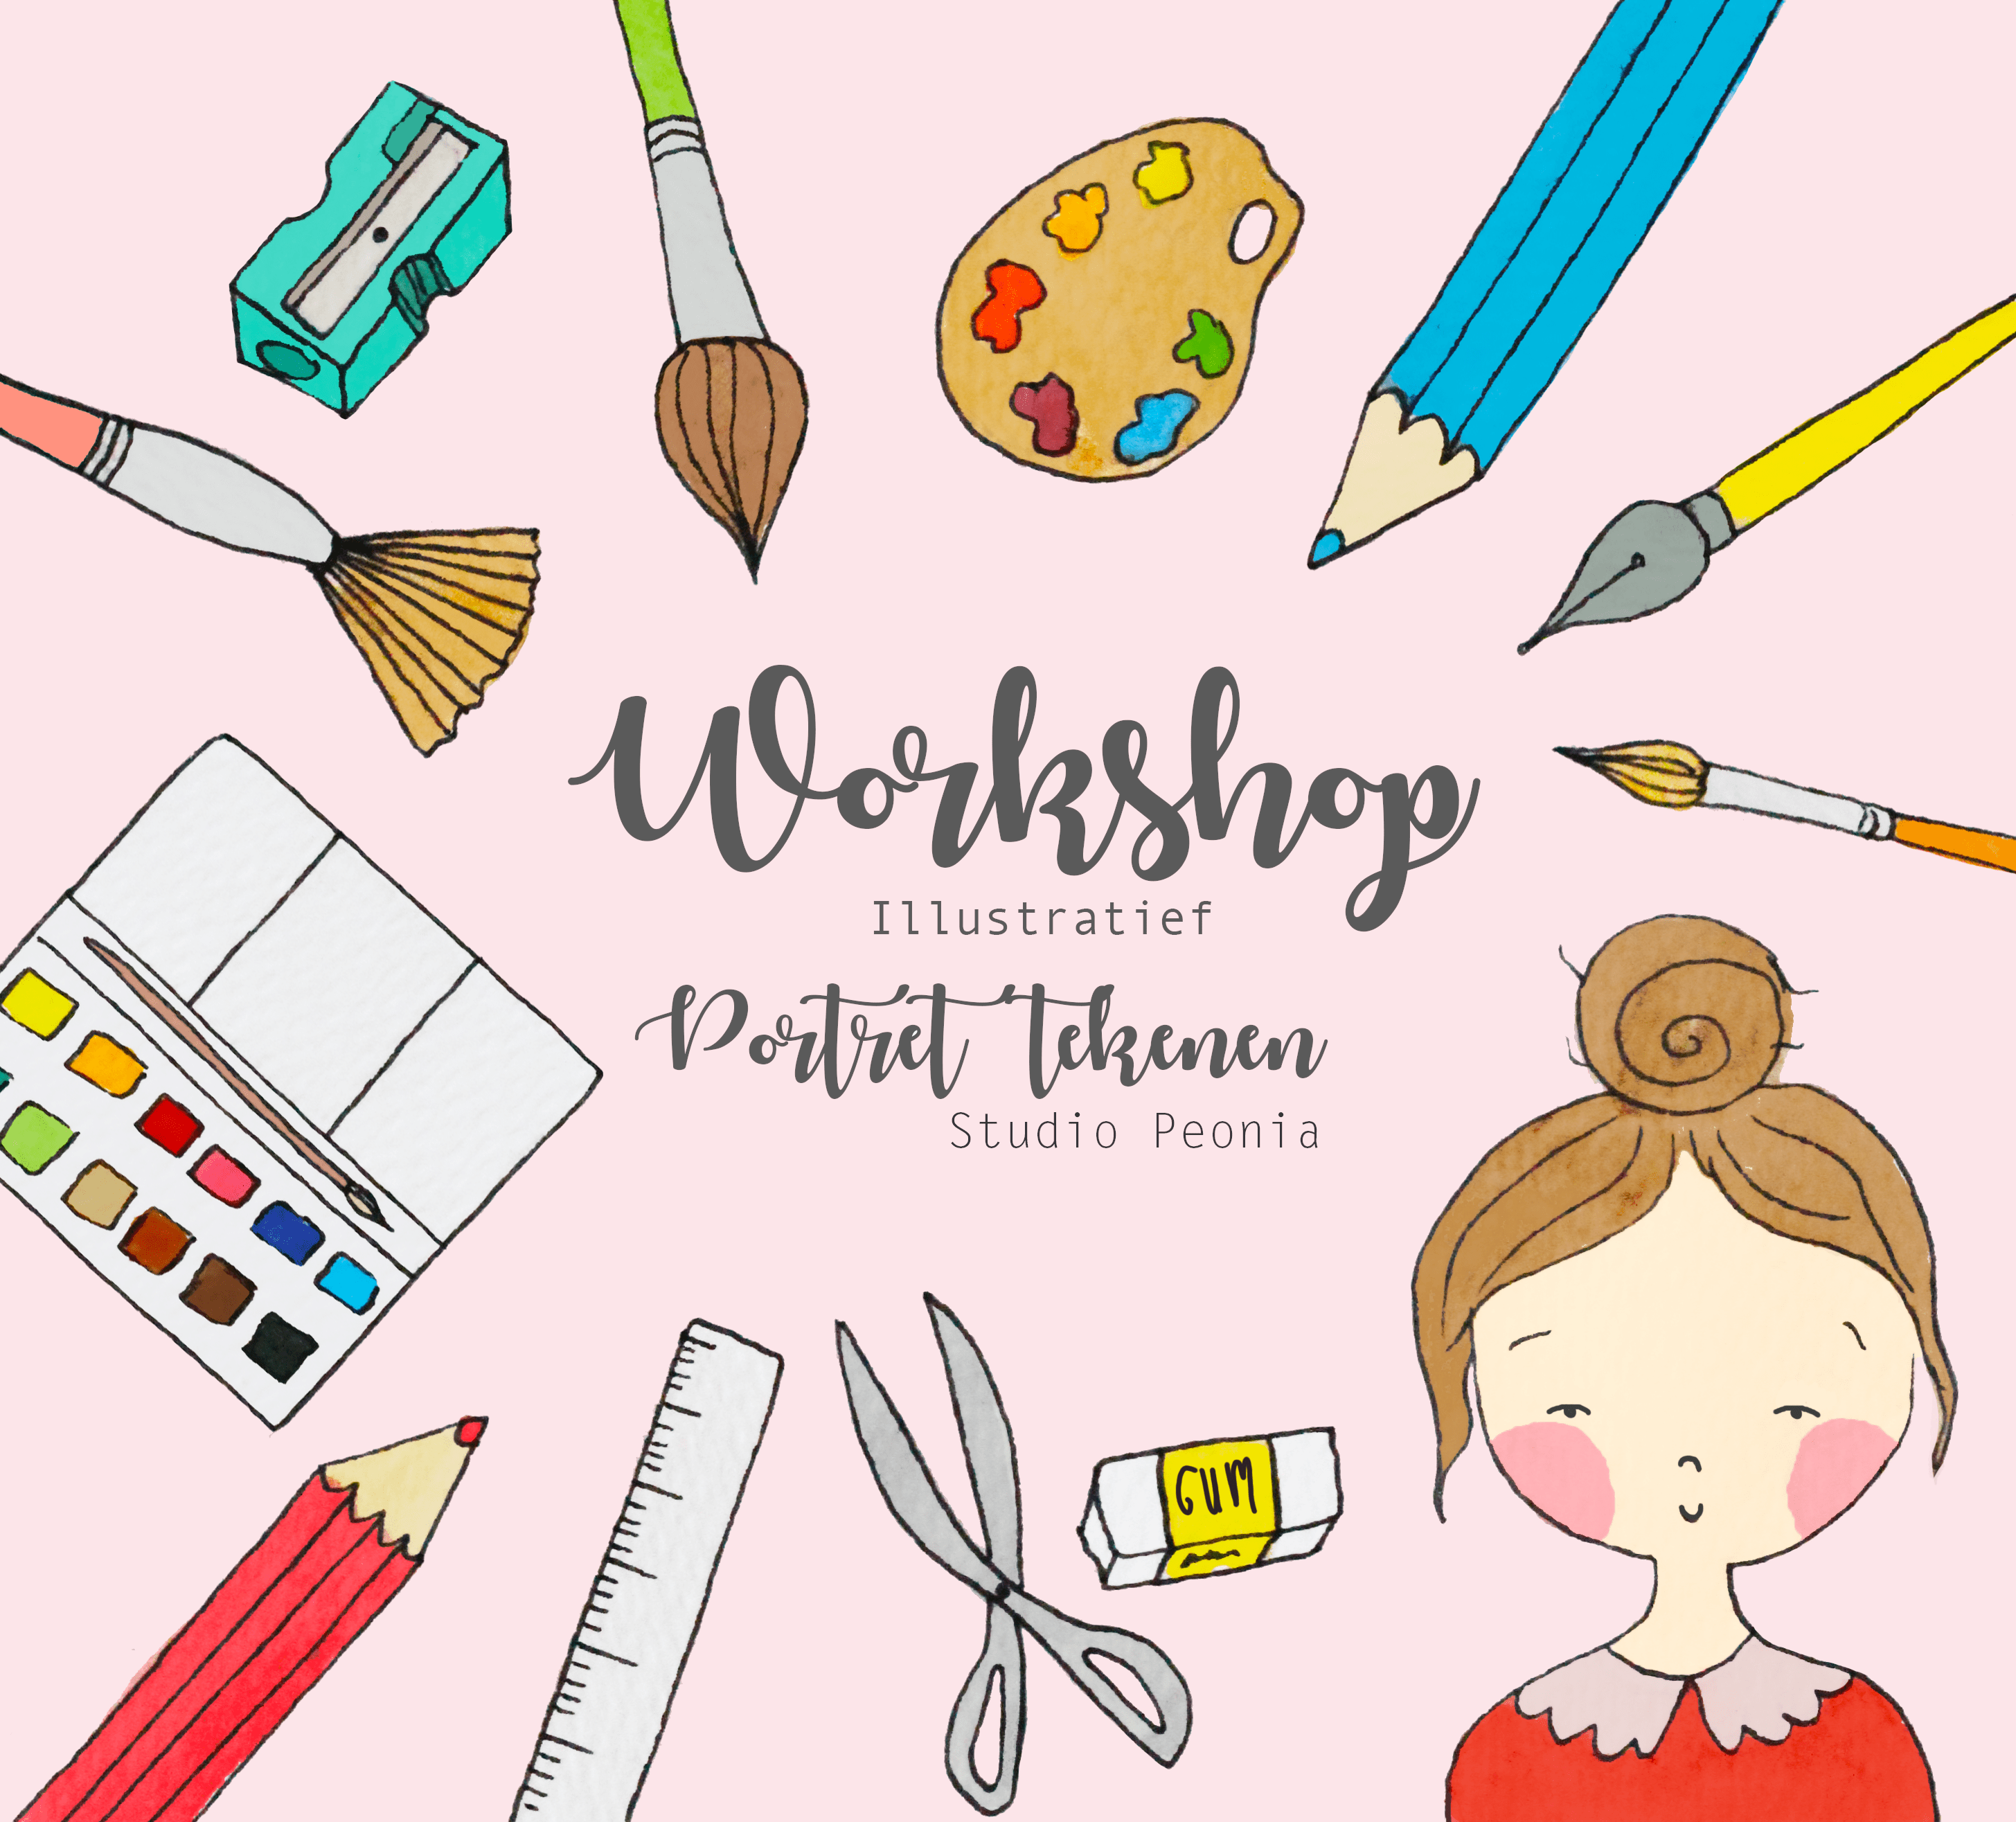 Kom jij een workshop illustratief portret tekenen volgen?